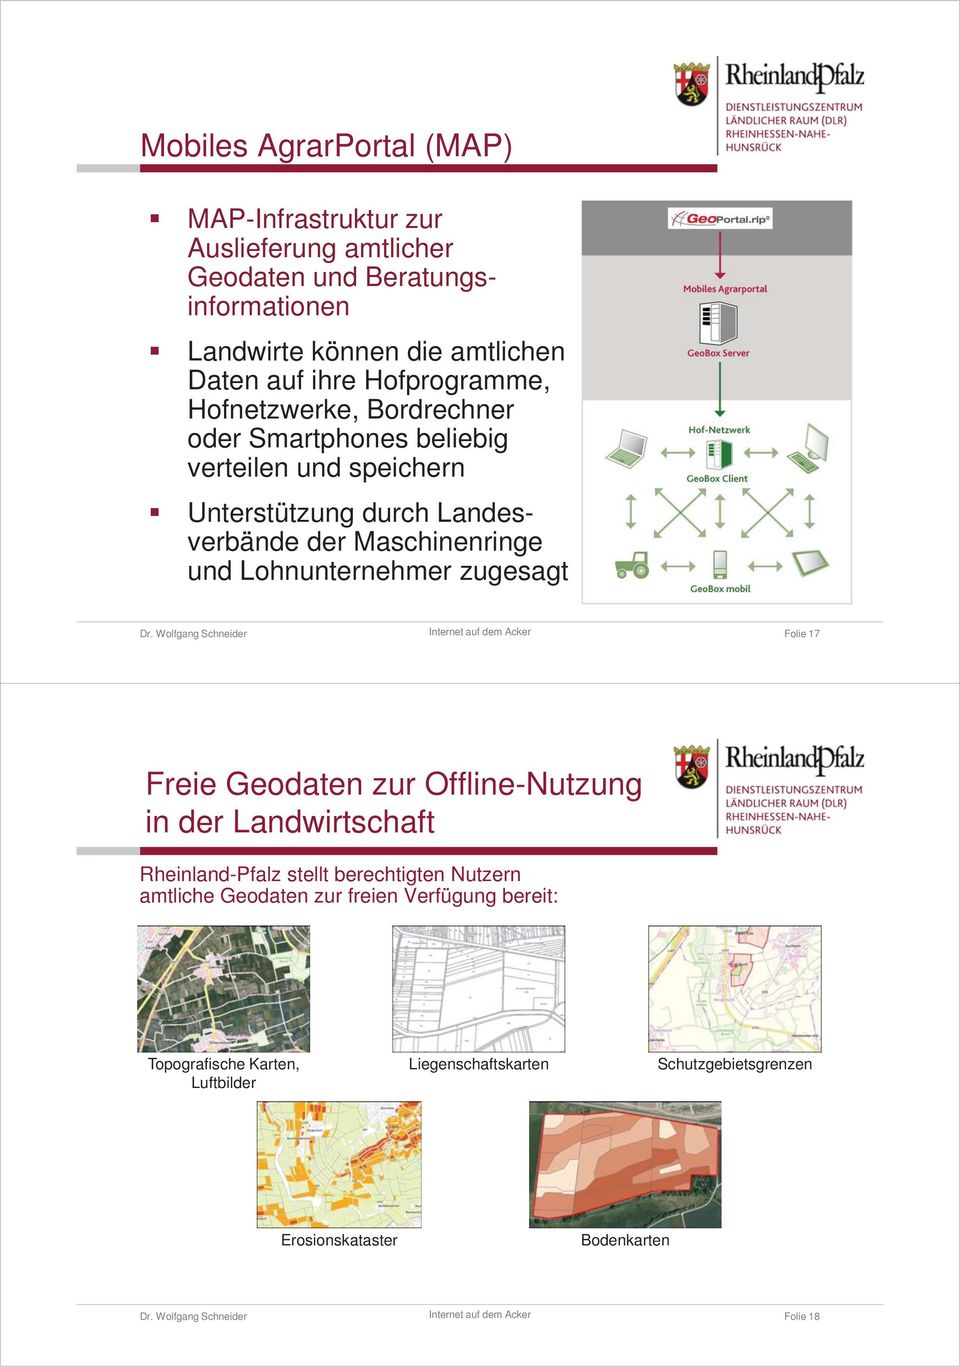 und Lohnunternehmer zugesagt Folie 17 Freie Geodaten zur Offline-Nutzung in der Landwirtschaft Rheinland-Pfalz stellt berechtigten Nutzern amtliche